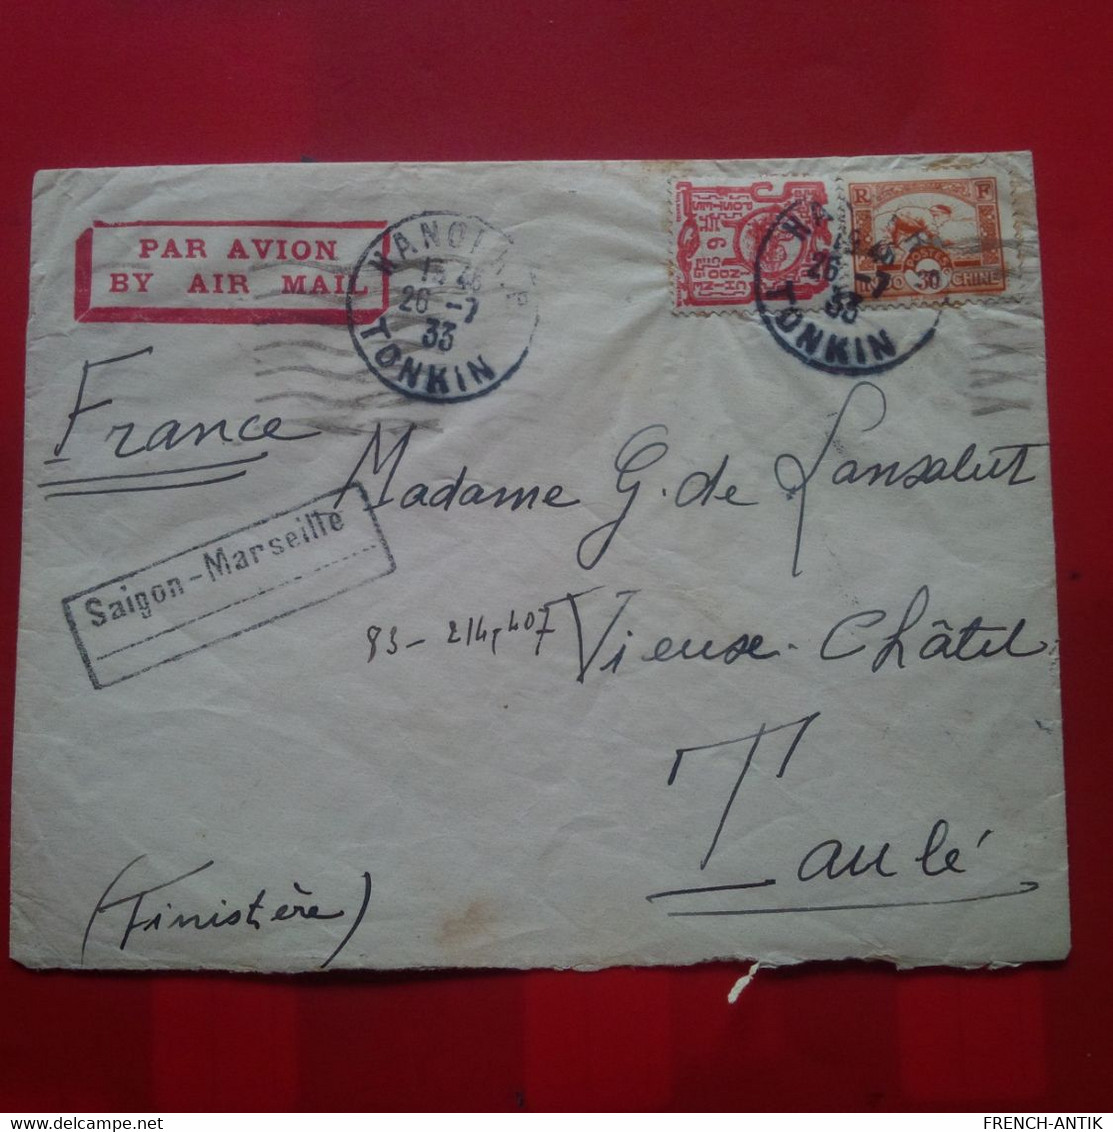 LETTRE HANOI POUR TAULE FINISTERE CACHET SAIGON MARSEILLE 1933 - Lettres & Documents